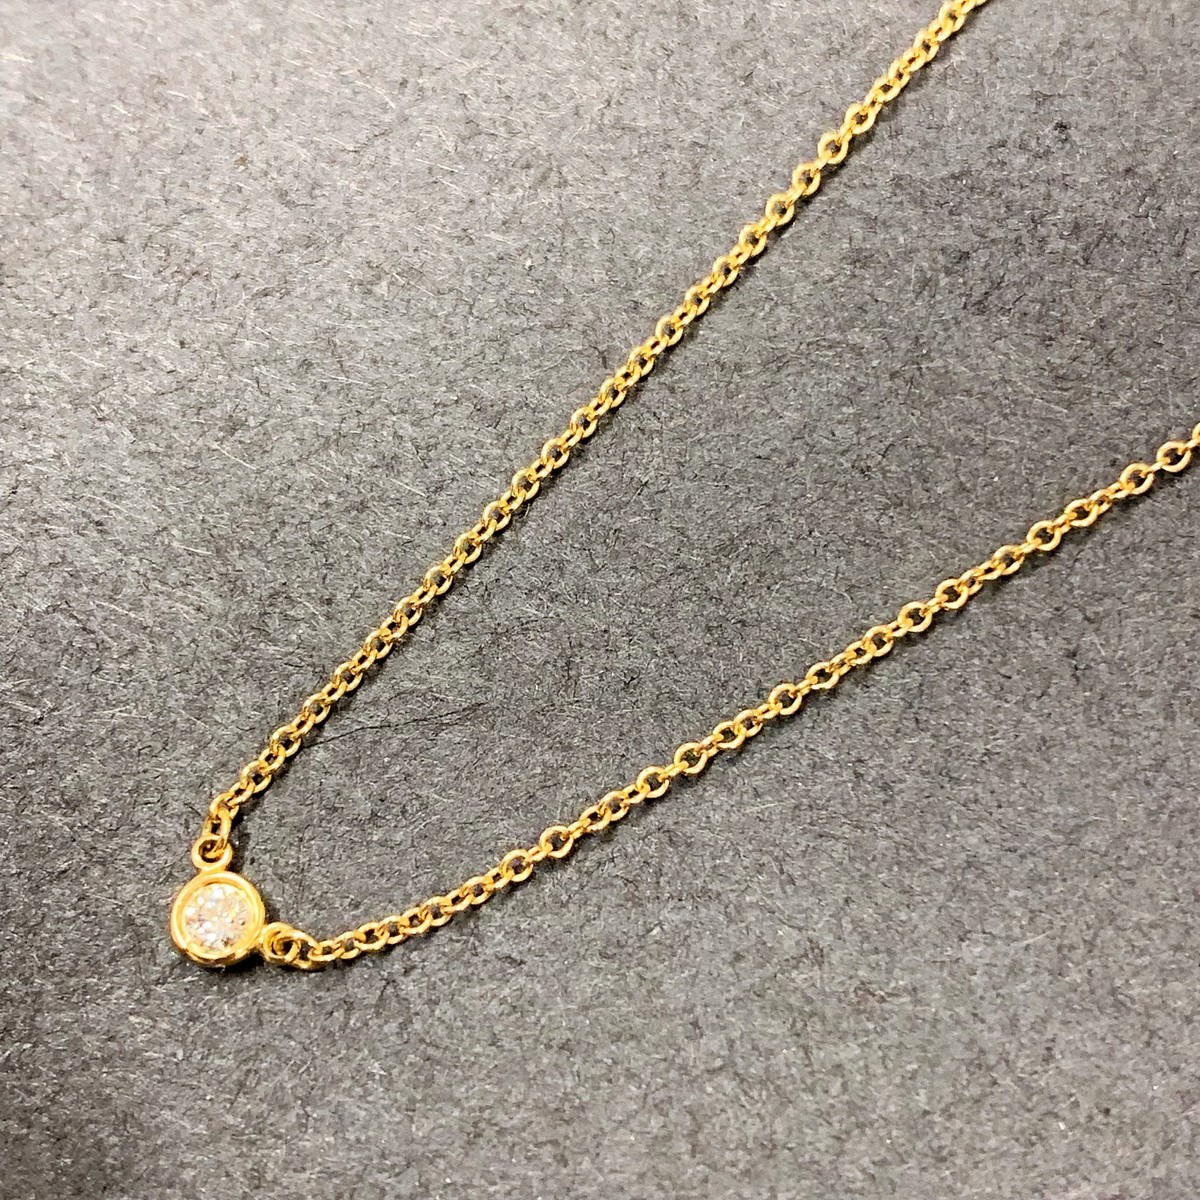 ティファニーのぺレッティ バイザヤード 1Pダイヤネックレスを買取致しました。エコスタイル銀座本店です。 買取価格・実績 2019年6月15日